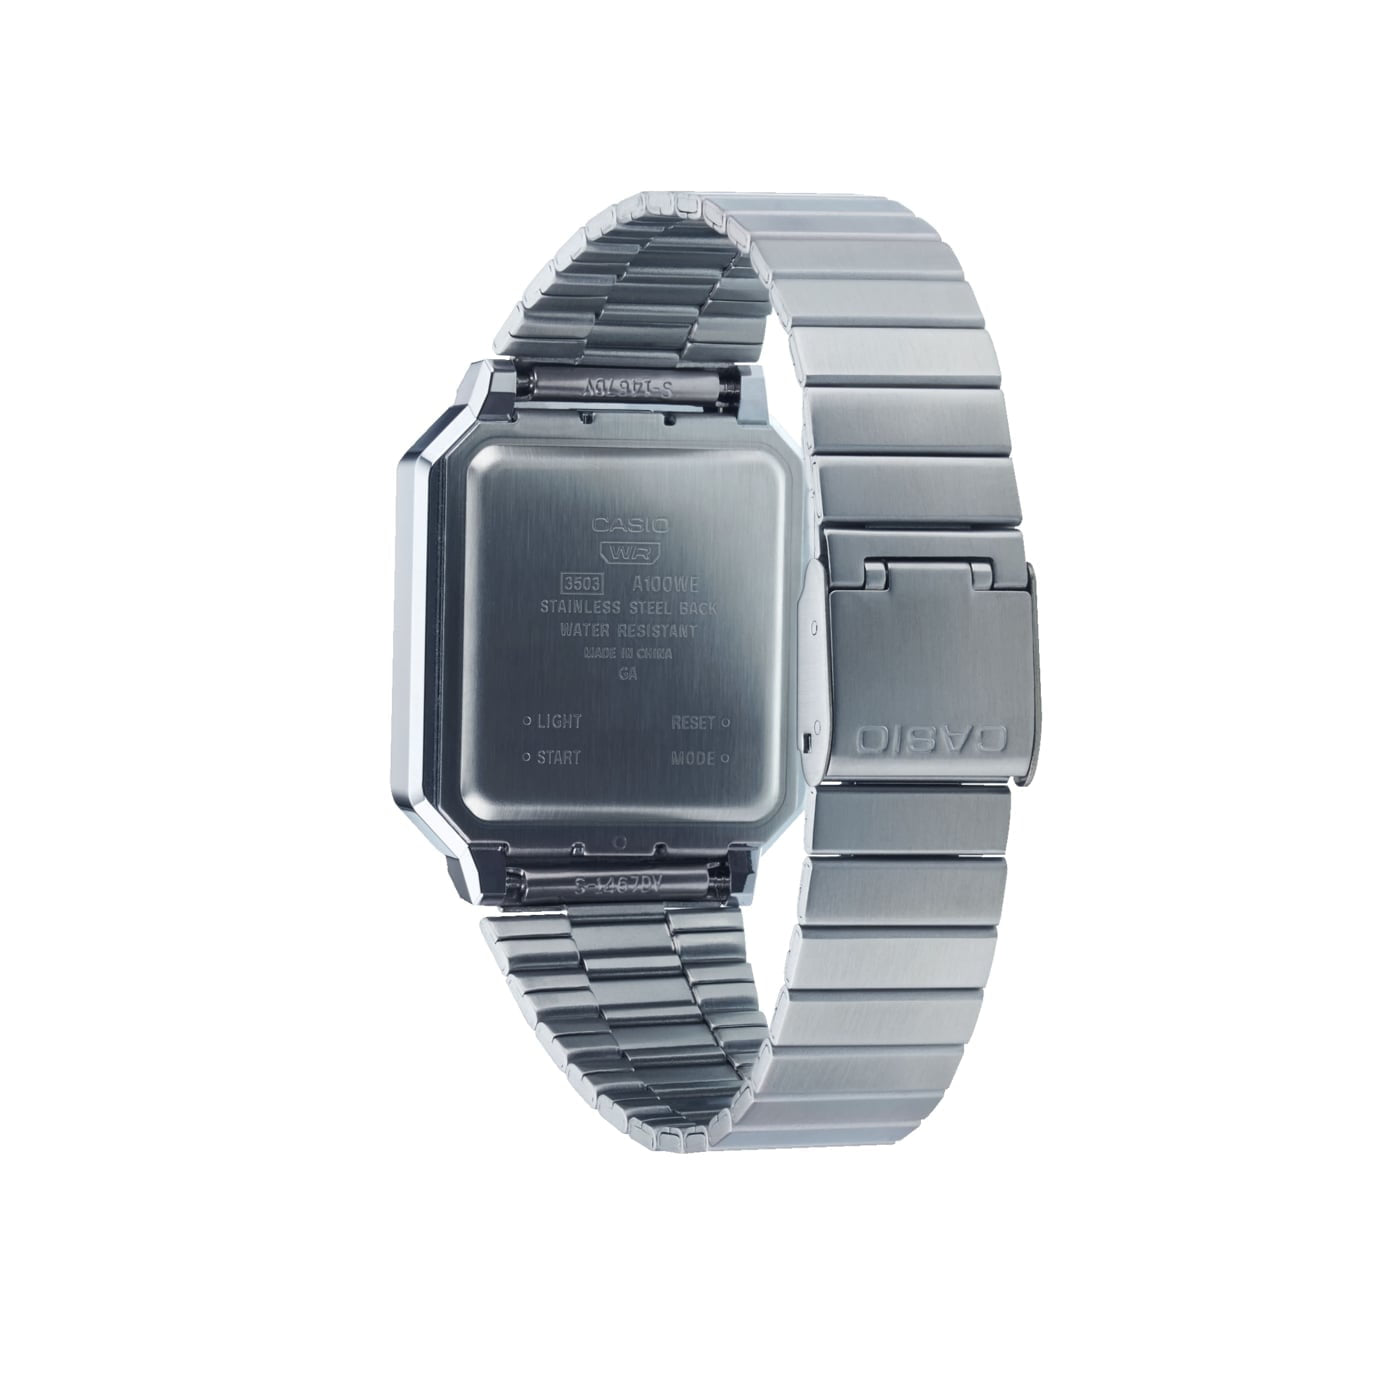 Casio A100WE-7BEF watch